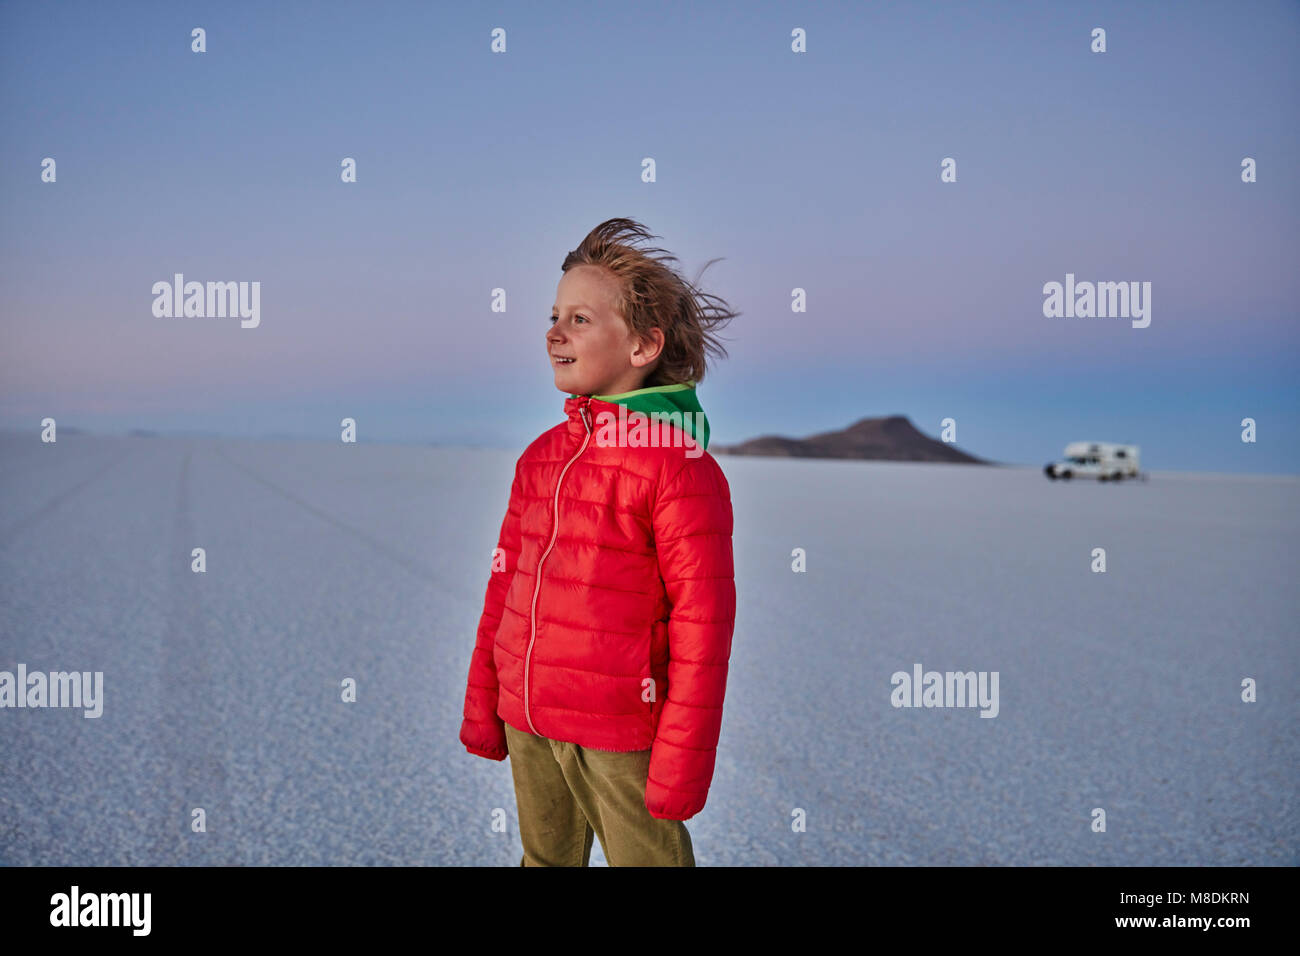 Jeune garçon debout sur les plaines salines, looking at view, véhicule récréatif en arrière-plan, Salar de Uyuni, Bolivie, Amérique du Sud Banque D'Images